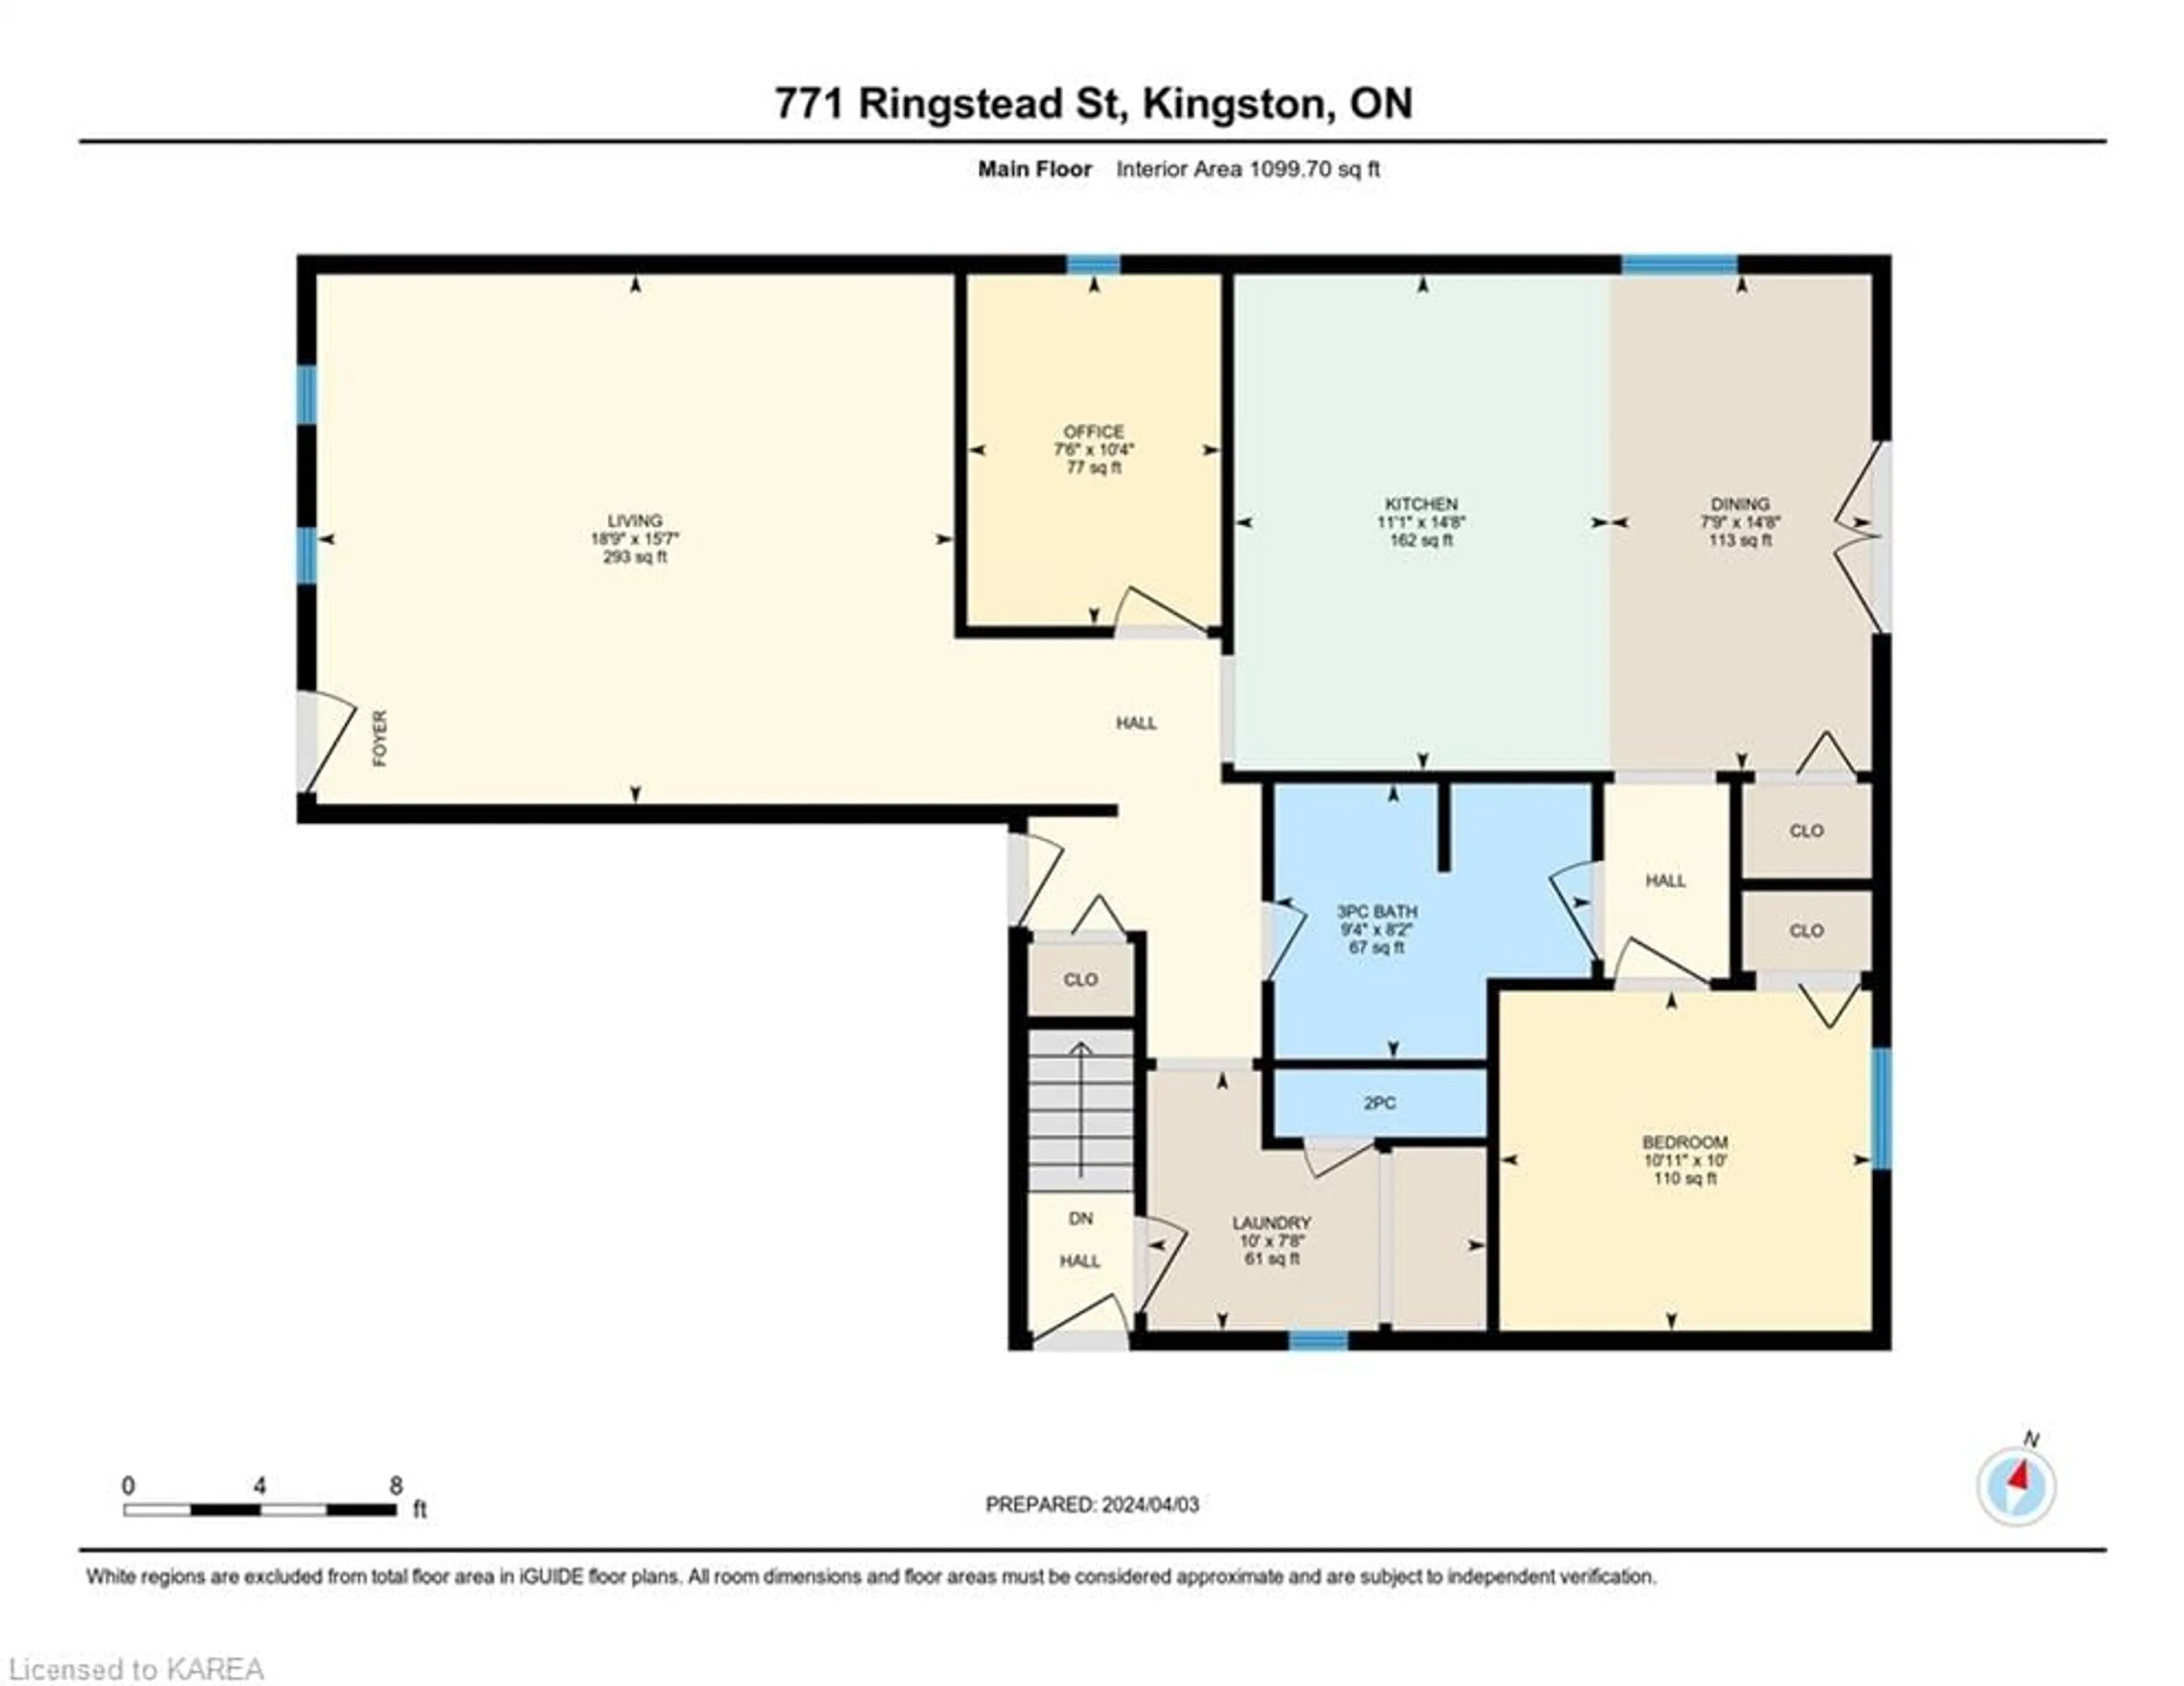 Floor plan for 771 Ringstead St, Kingston Ontario K7M 8V2